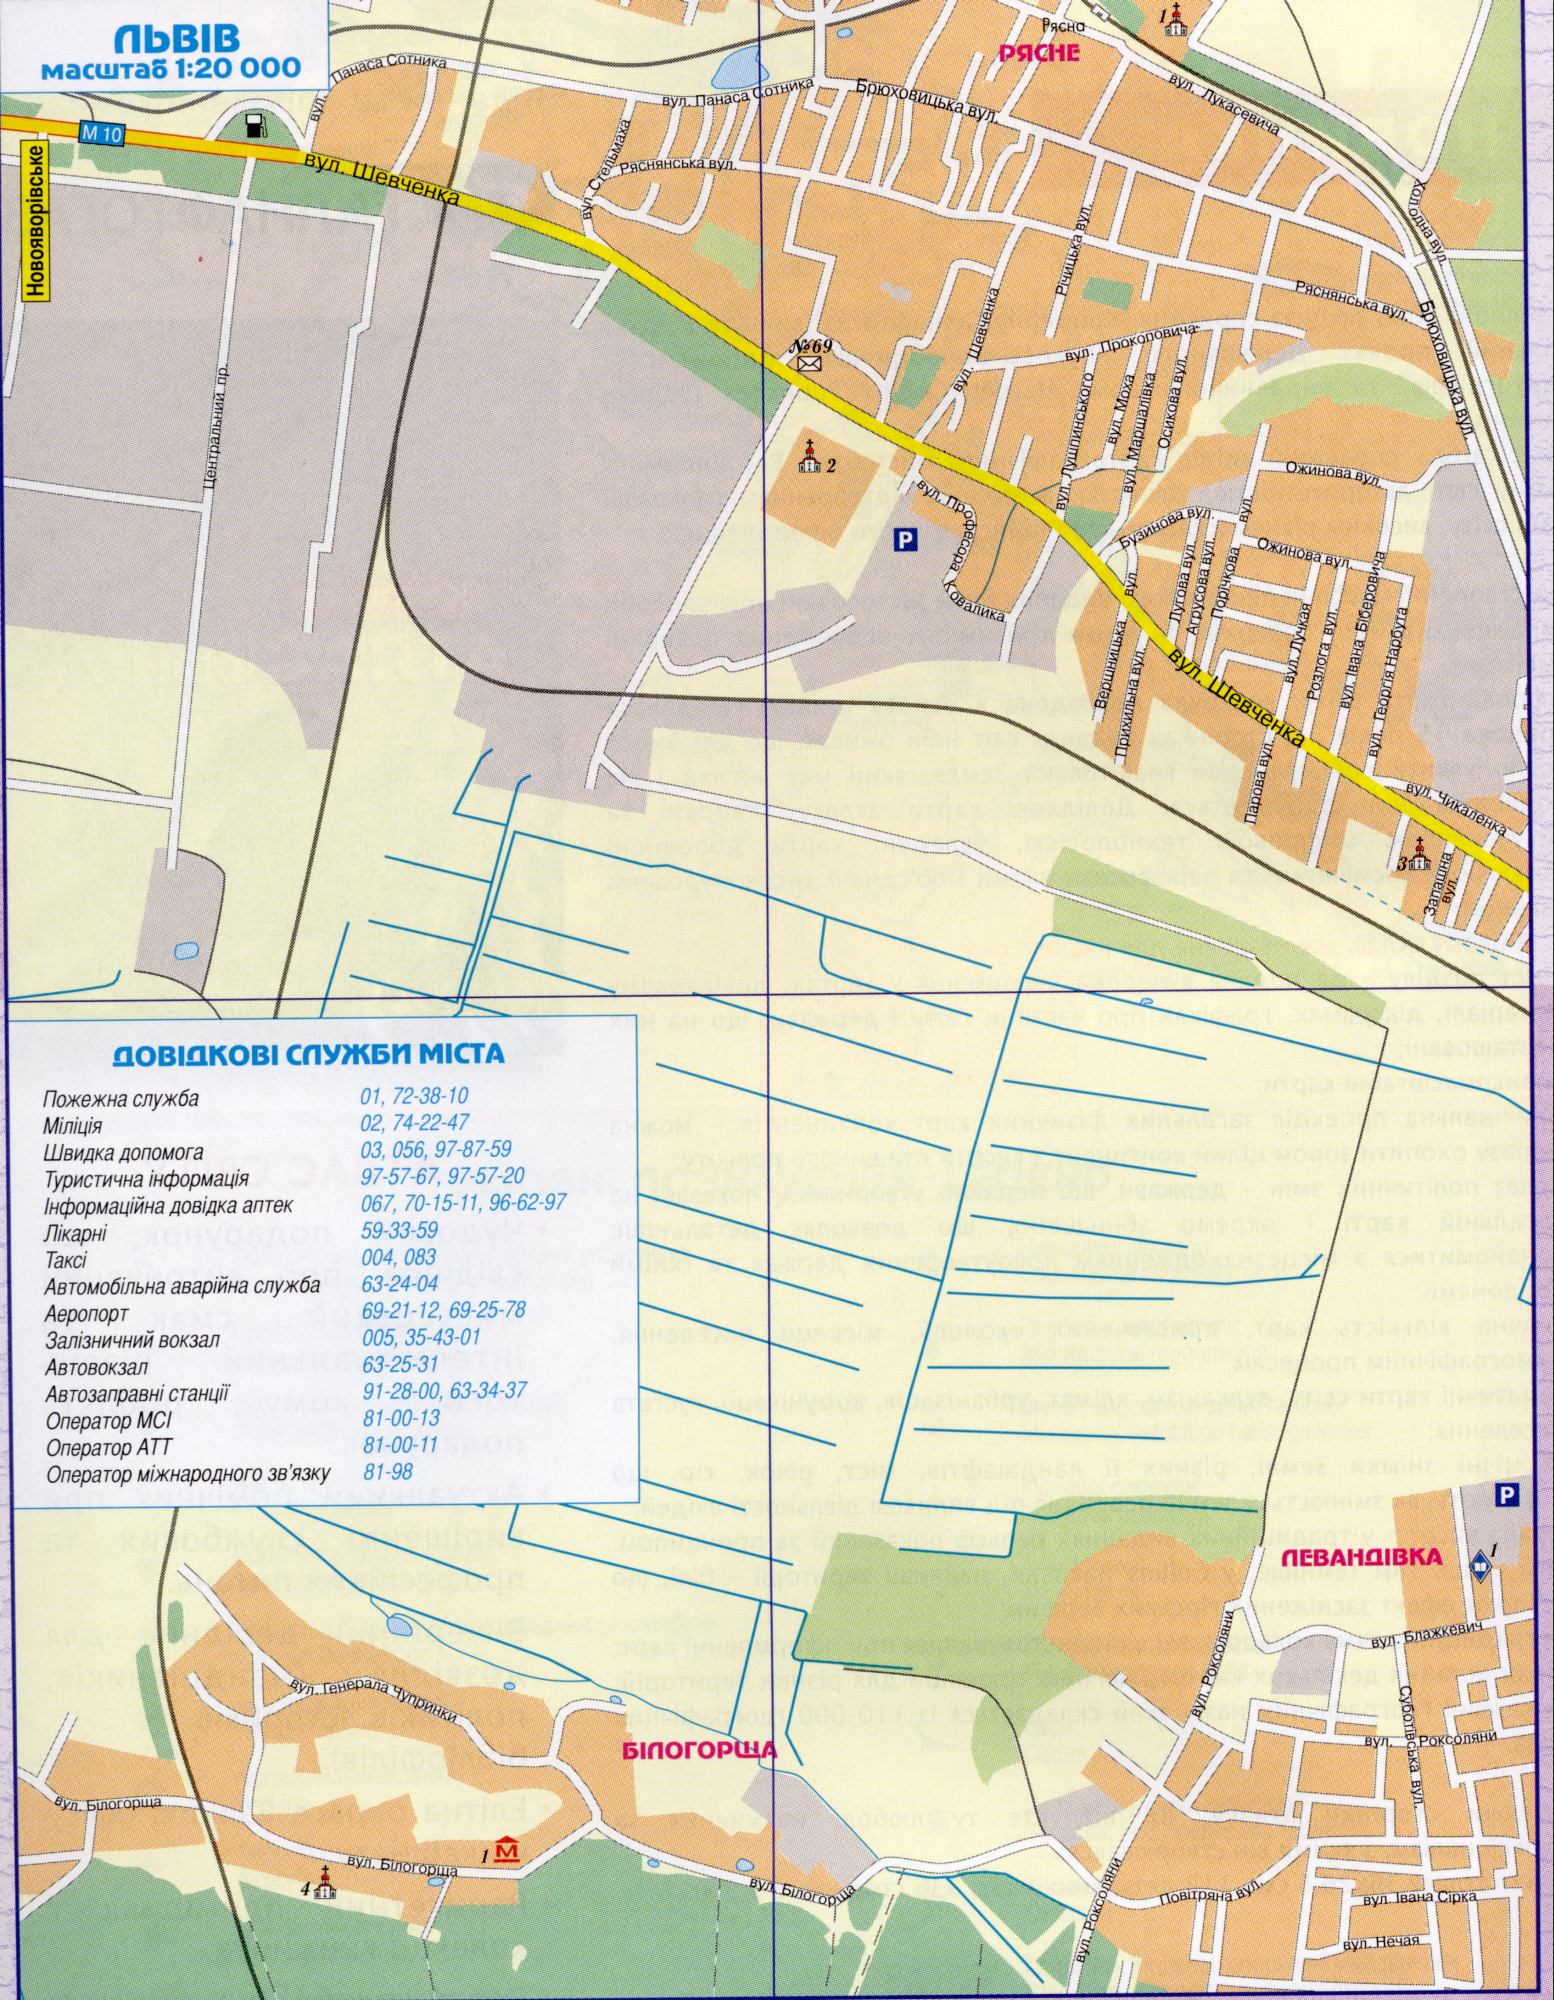 Lviv Karte Details, vergrößern 1 cm von 200 Metern. Das regionale Zentrum der Region Lviv. Kostenlos herunterladen